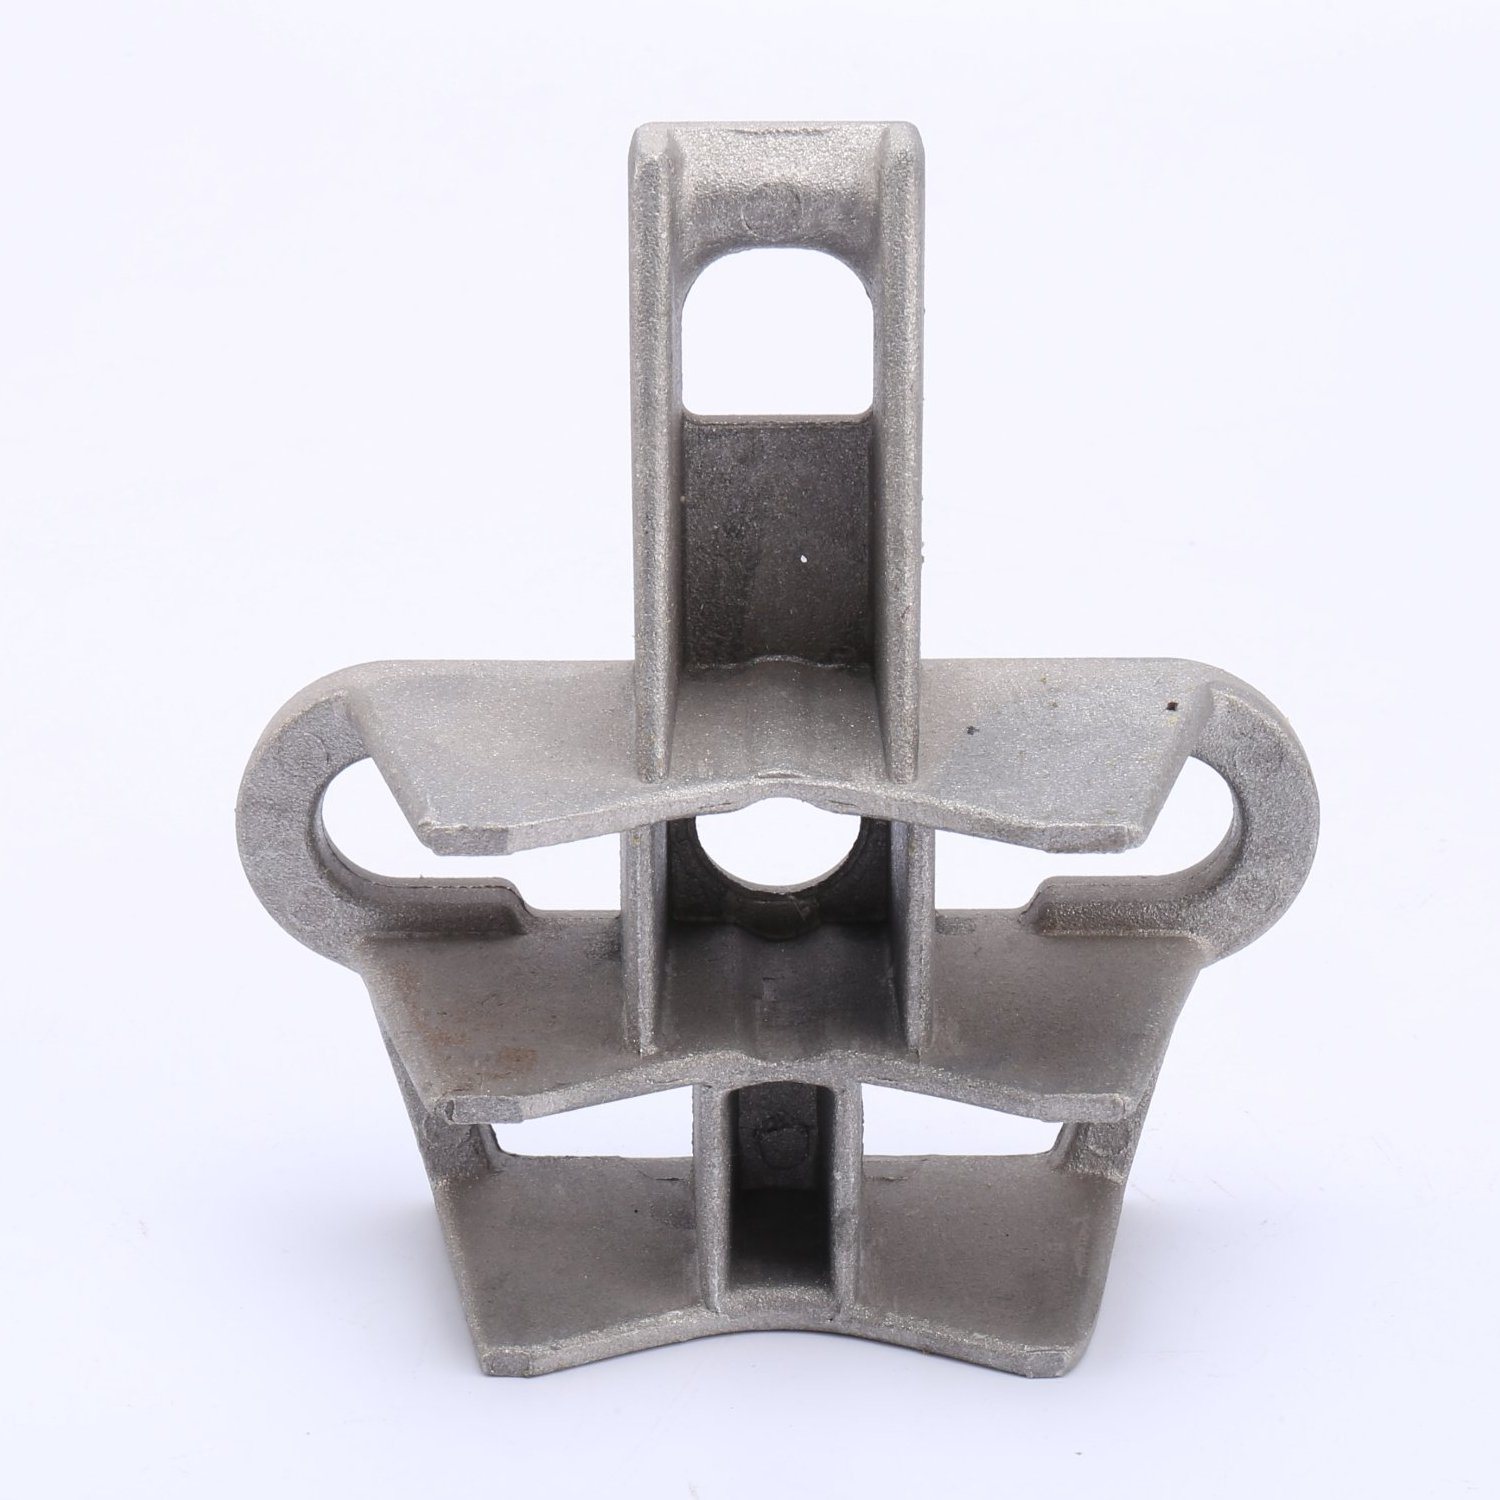 
                La tensión de montaje en poste de metal de soporte de anclaje de aleación de aluminio soportes de la abrazadera
            